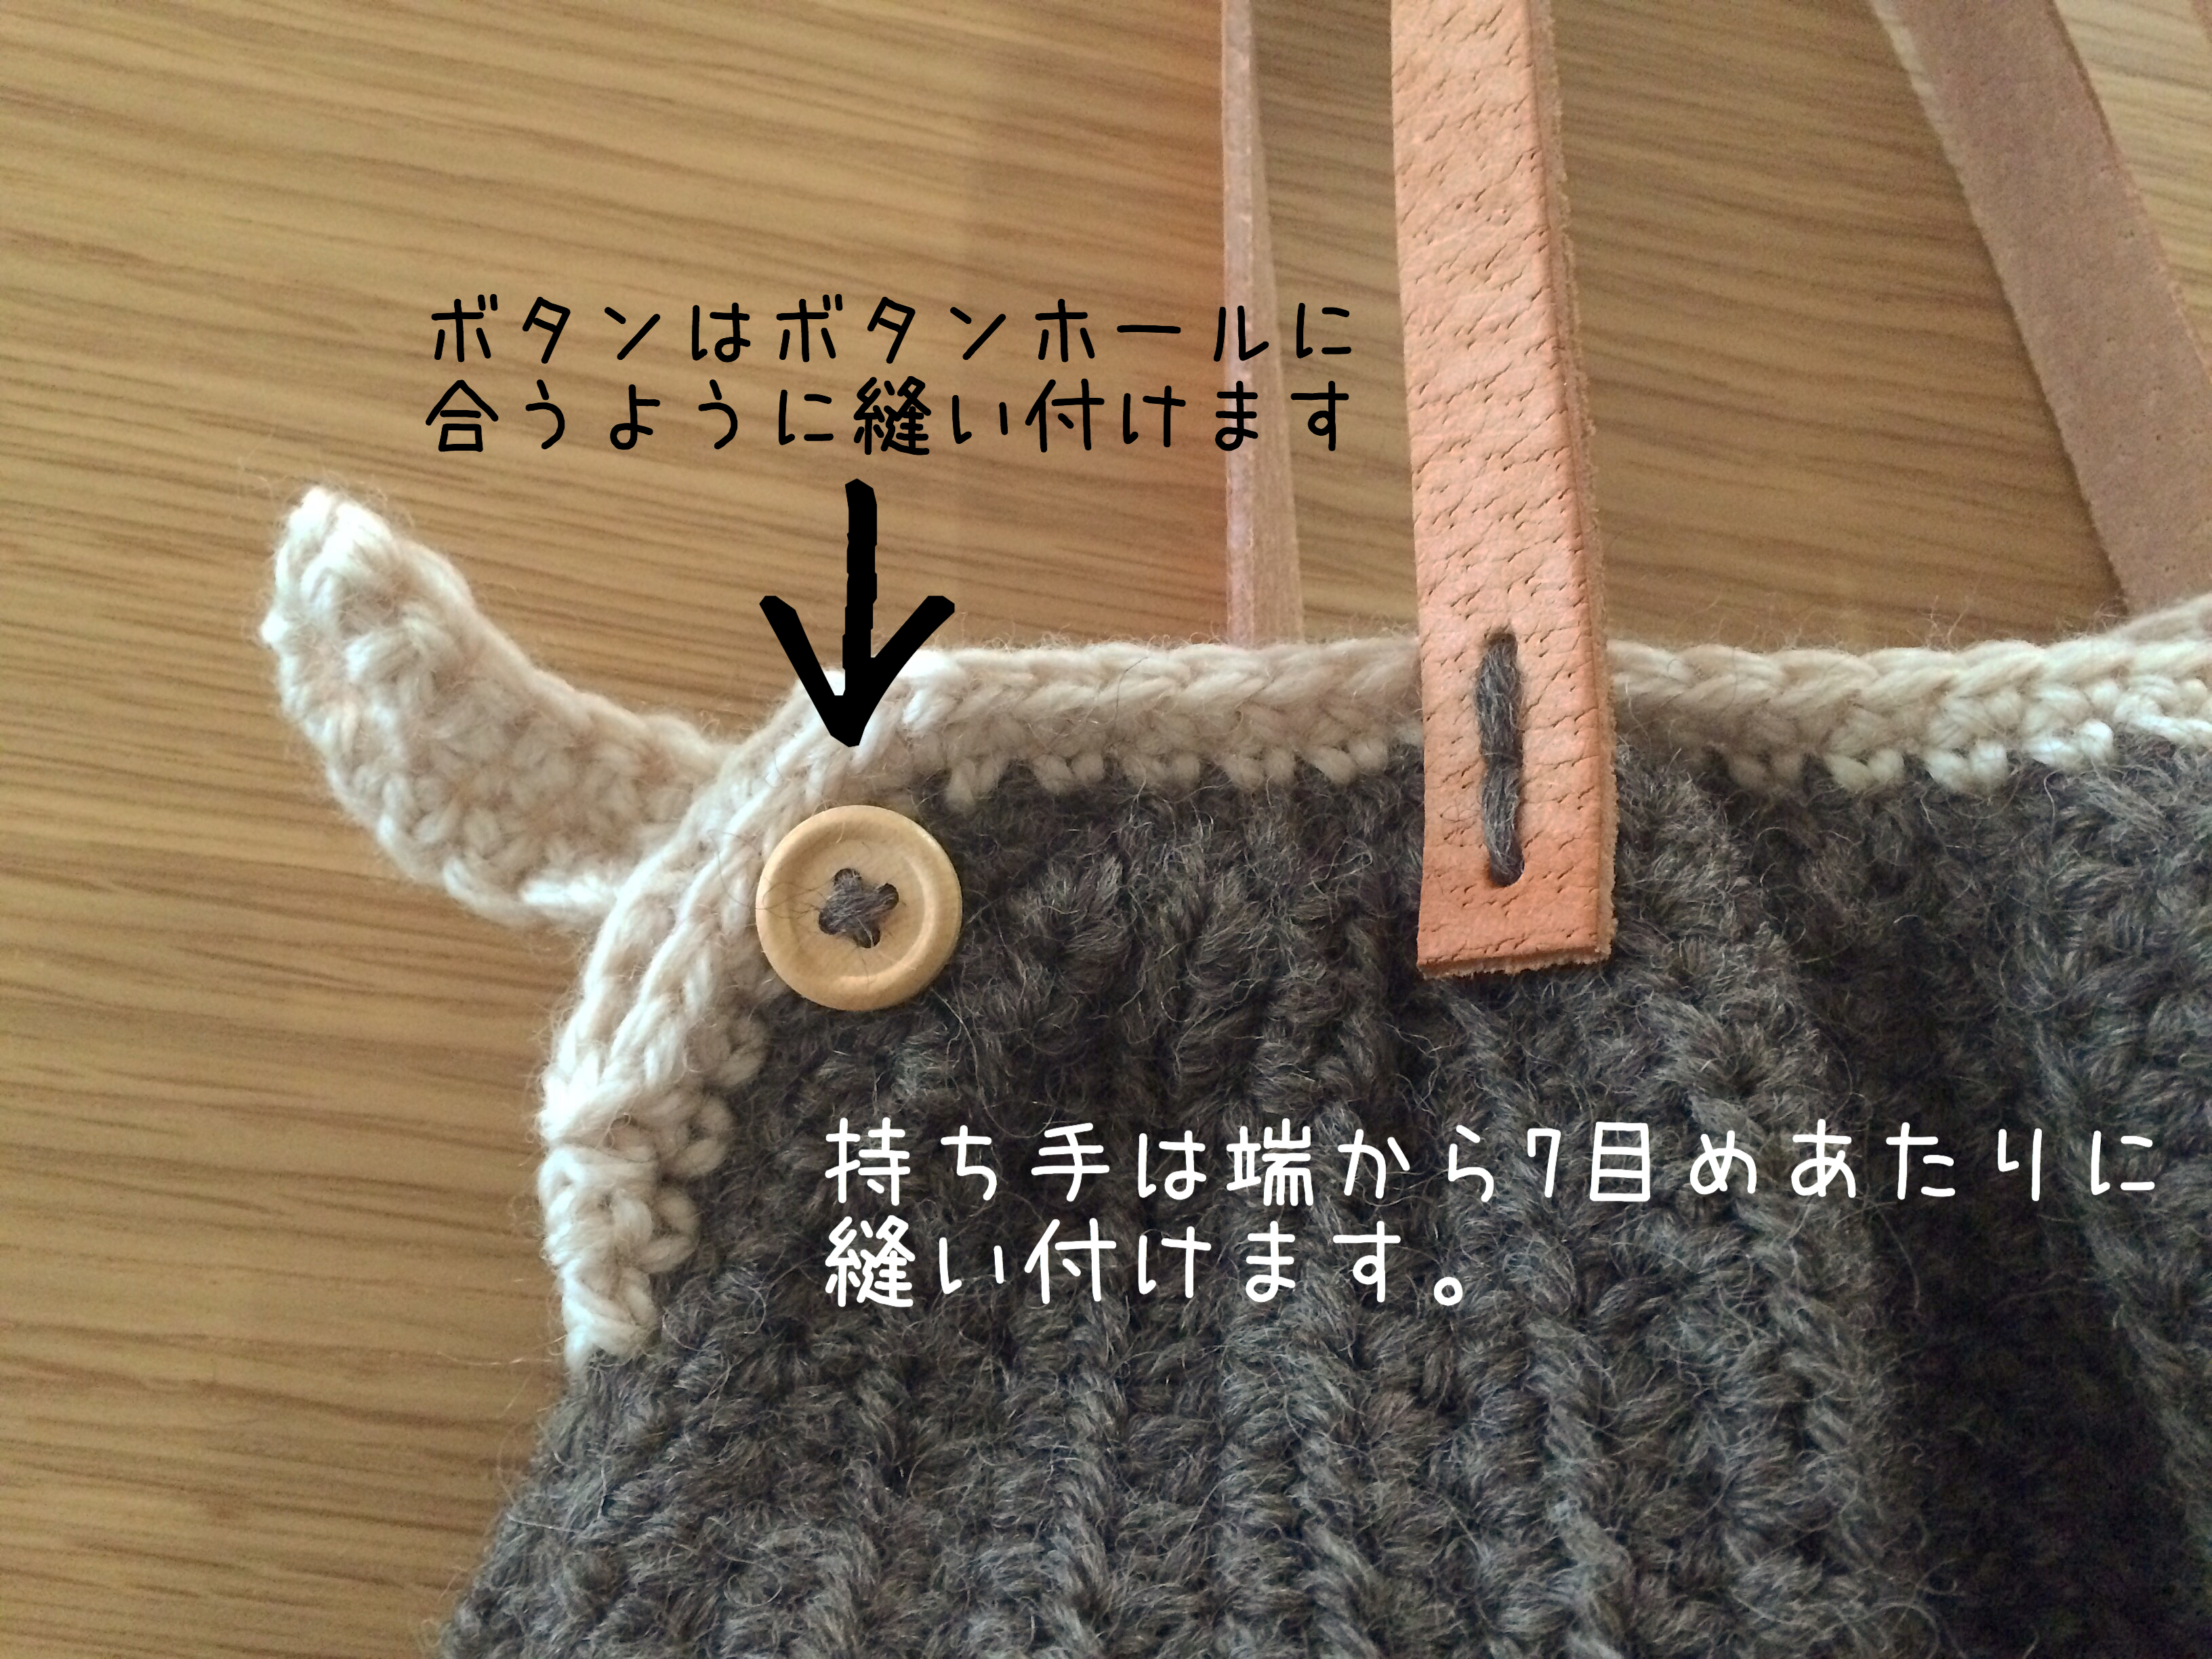 かぎ針編み グラニートート ４飾りのボタンと持ち手 かぎ針編みとレース編みの無料編み図サイト By Hime Hima